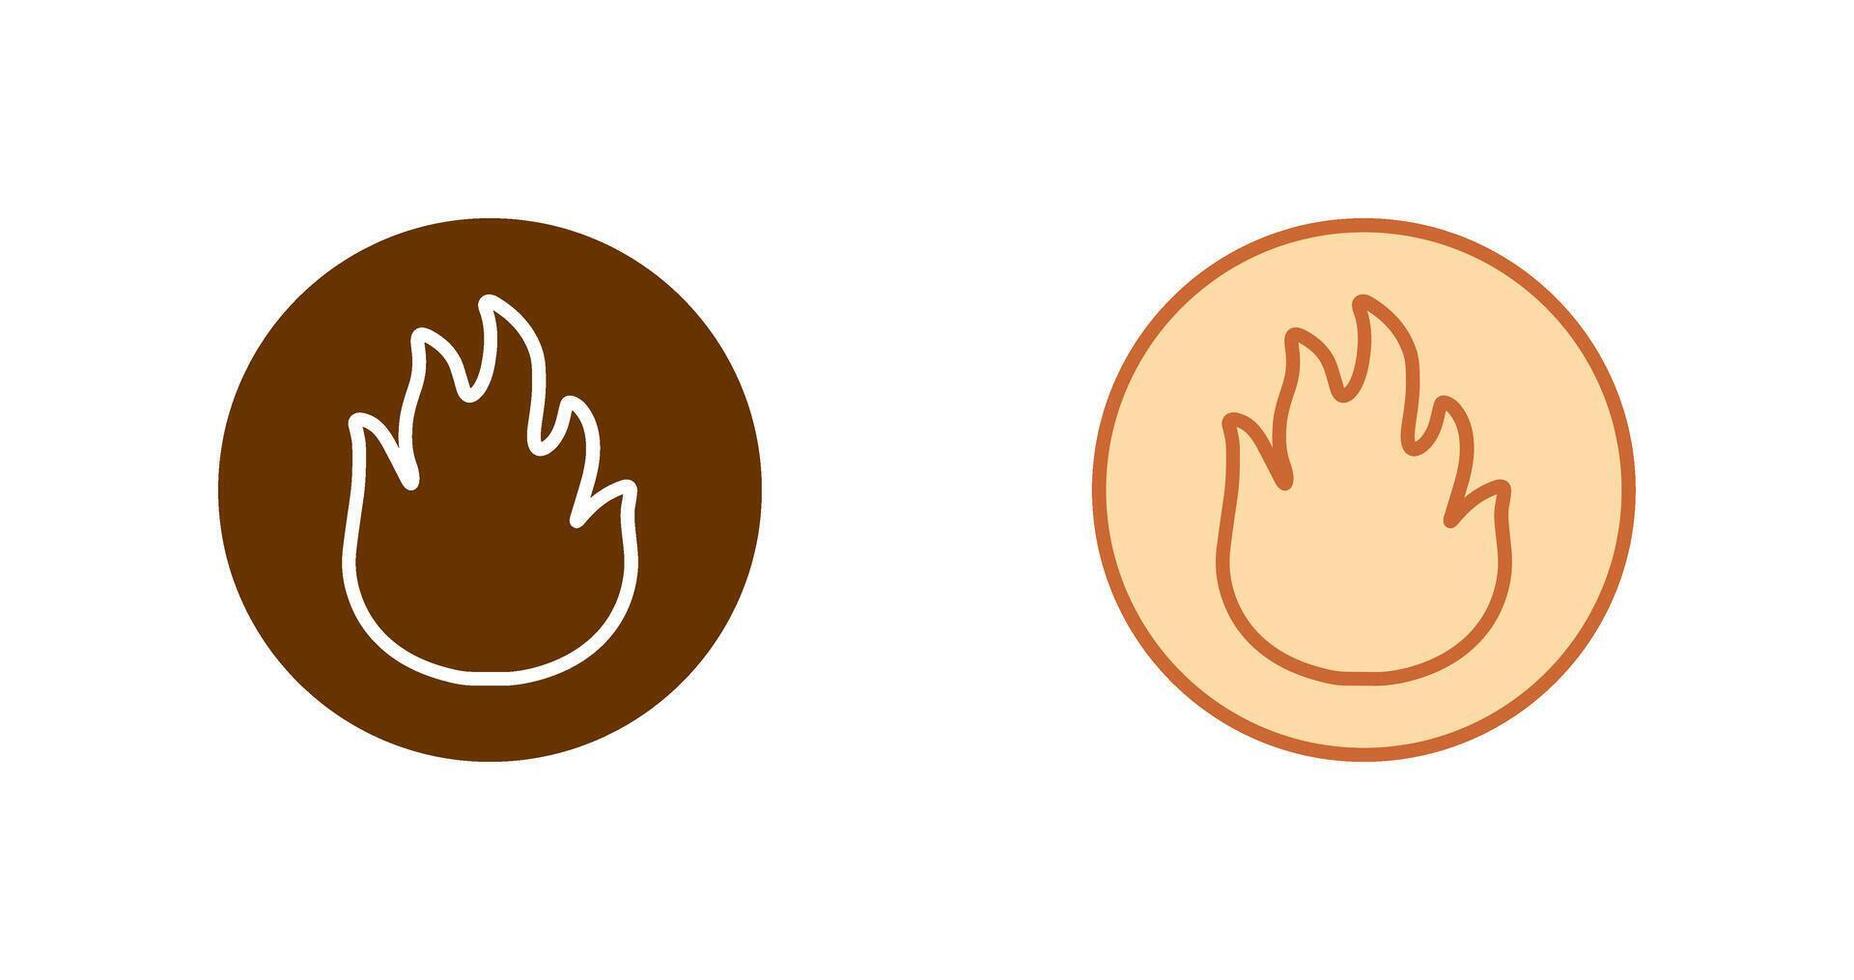 Fire Icon Design vector